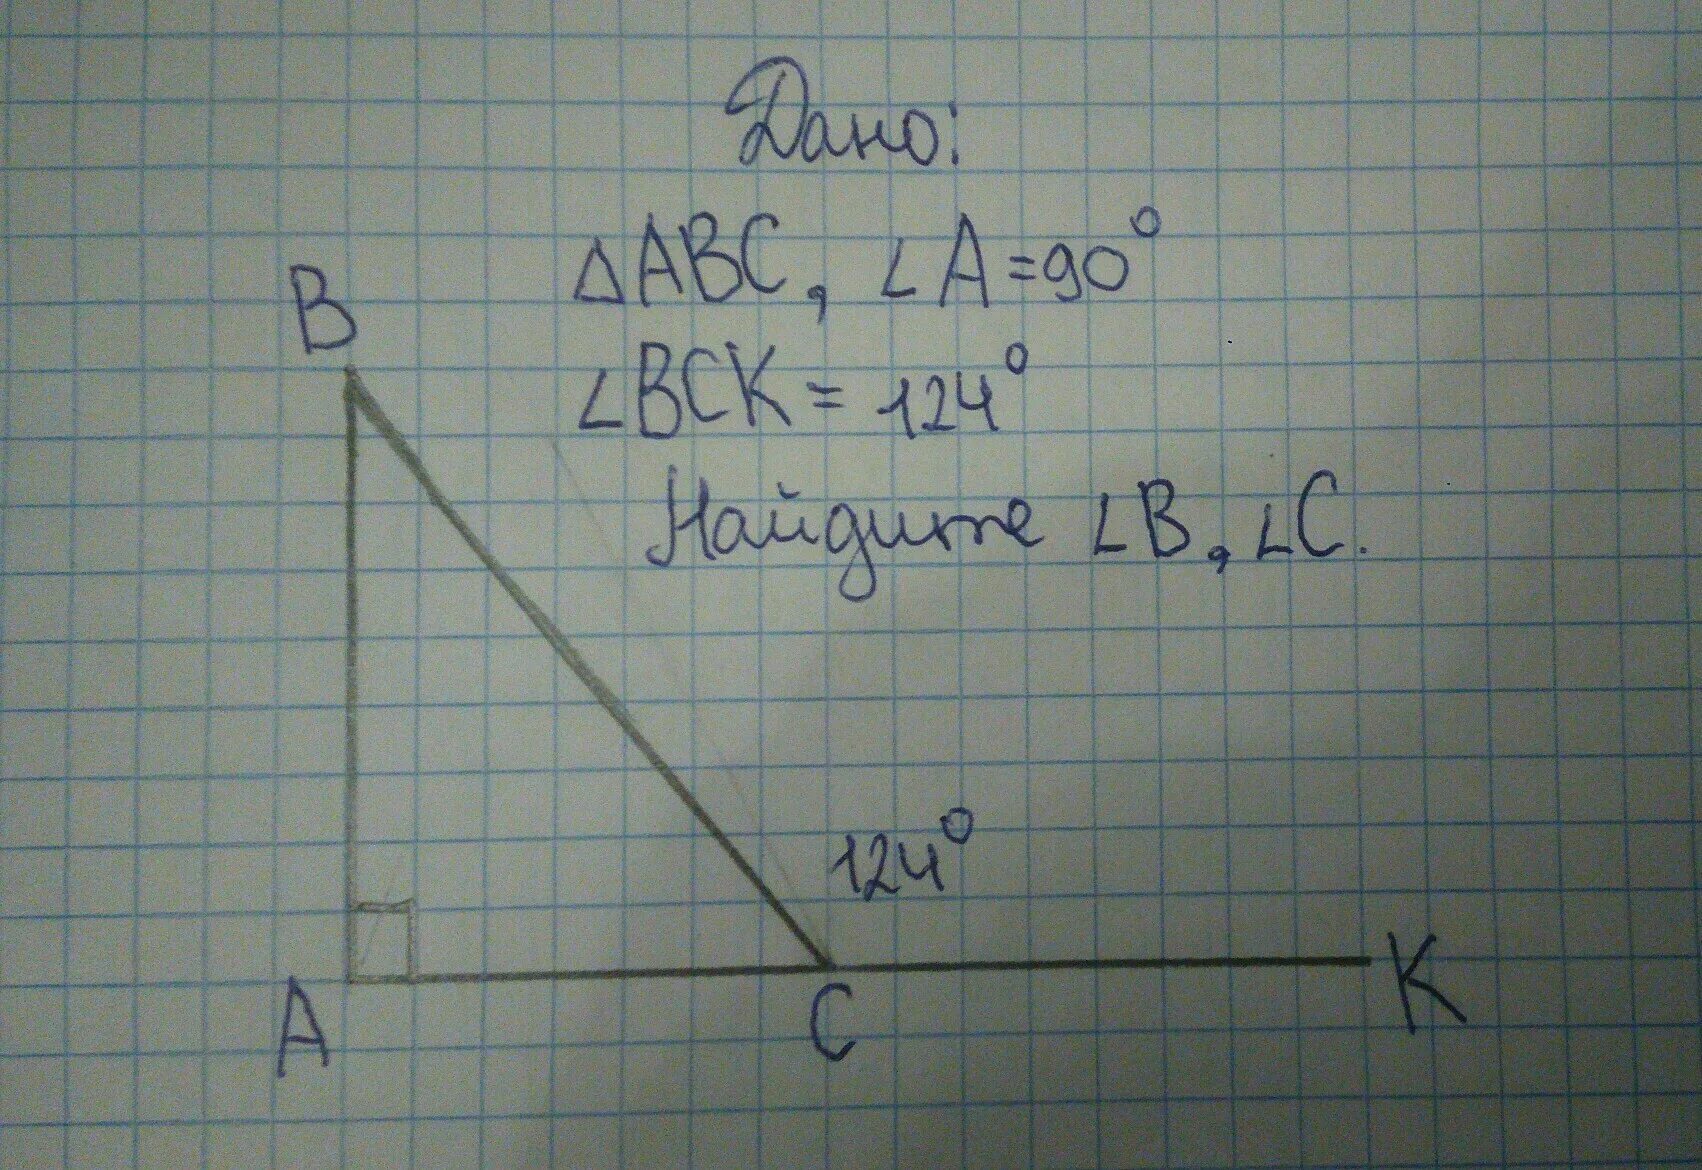 Найти угол аск. Угол CAD =27° , угол ACK = 32° , найти угол в. 344 Геометрия найти угол ACK.